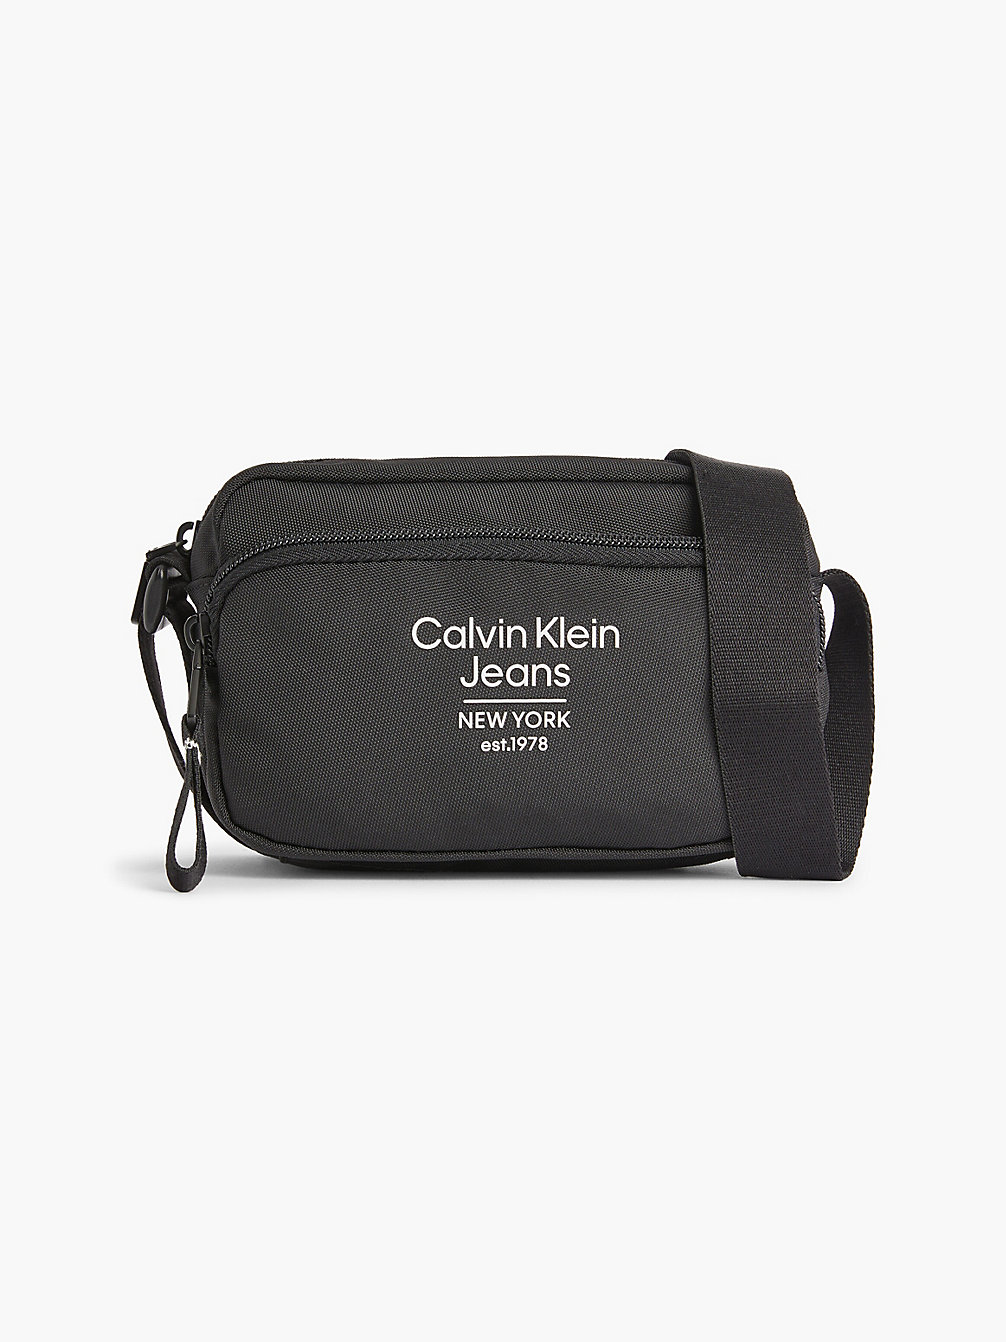 BLACK > Torba Przez Ramię Z Materiałów Z Recyklingu > undefined Mężczyźni - Calvin Klein